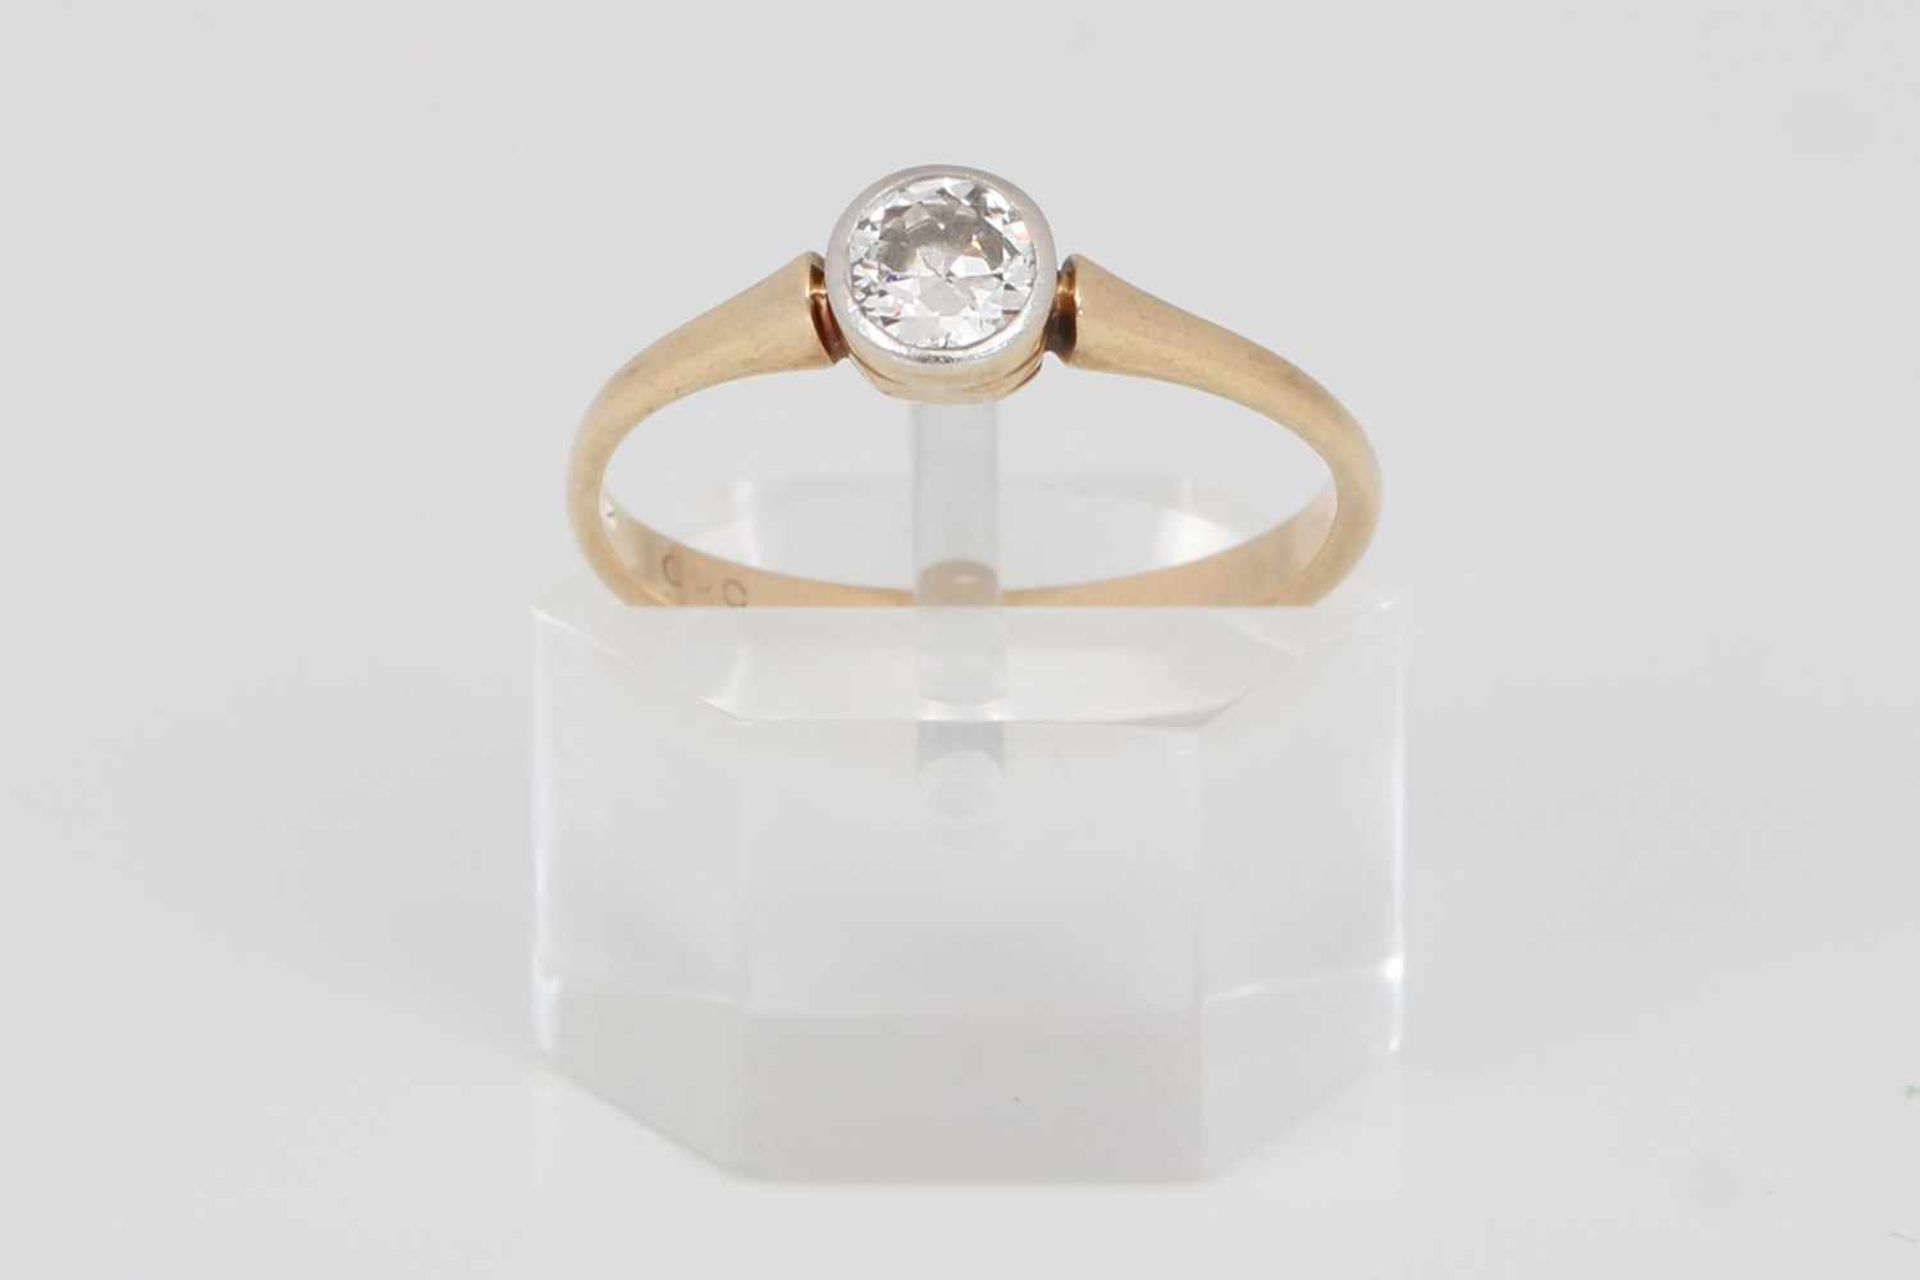 Antiker Ring mit Diamantsolitär585er Gelbgold, zarte Schiene mit 1 Diamant im Brillantschliff, ca. - Image 2 of 2